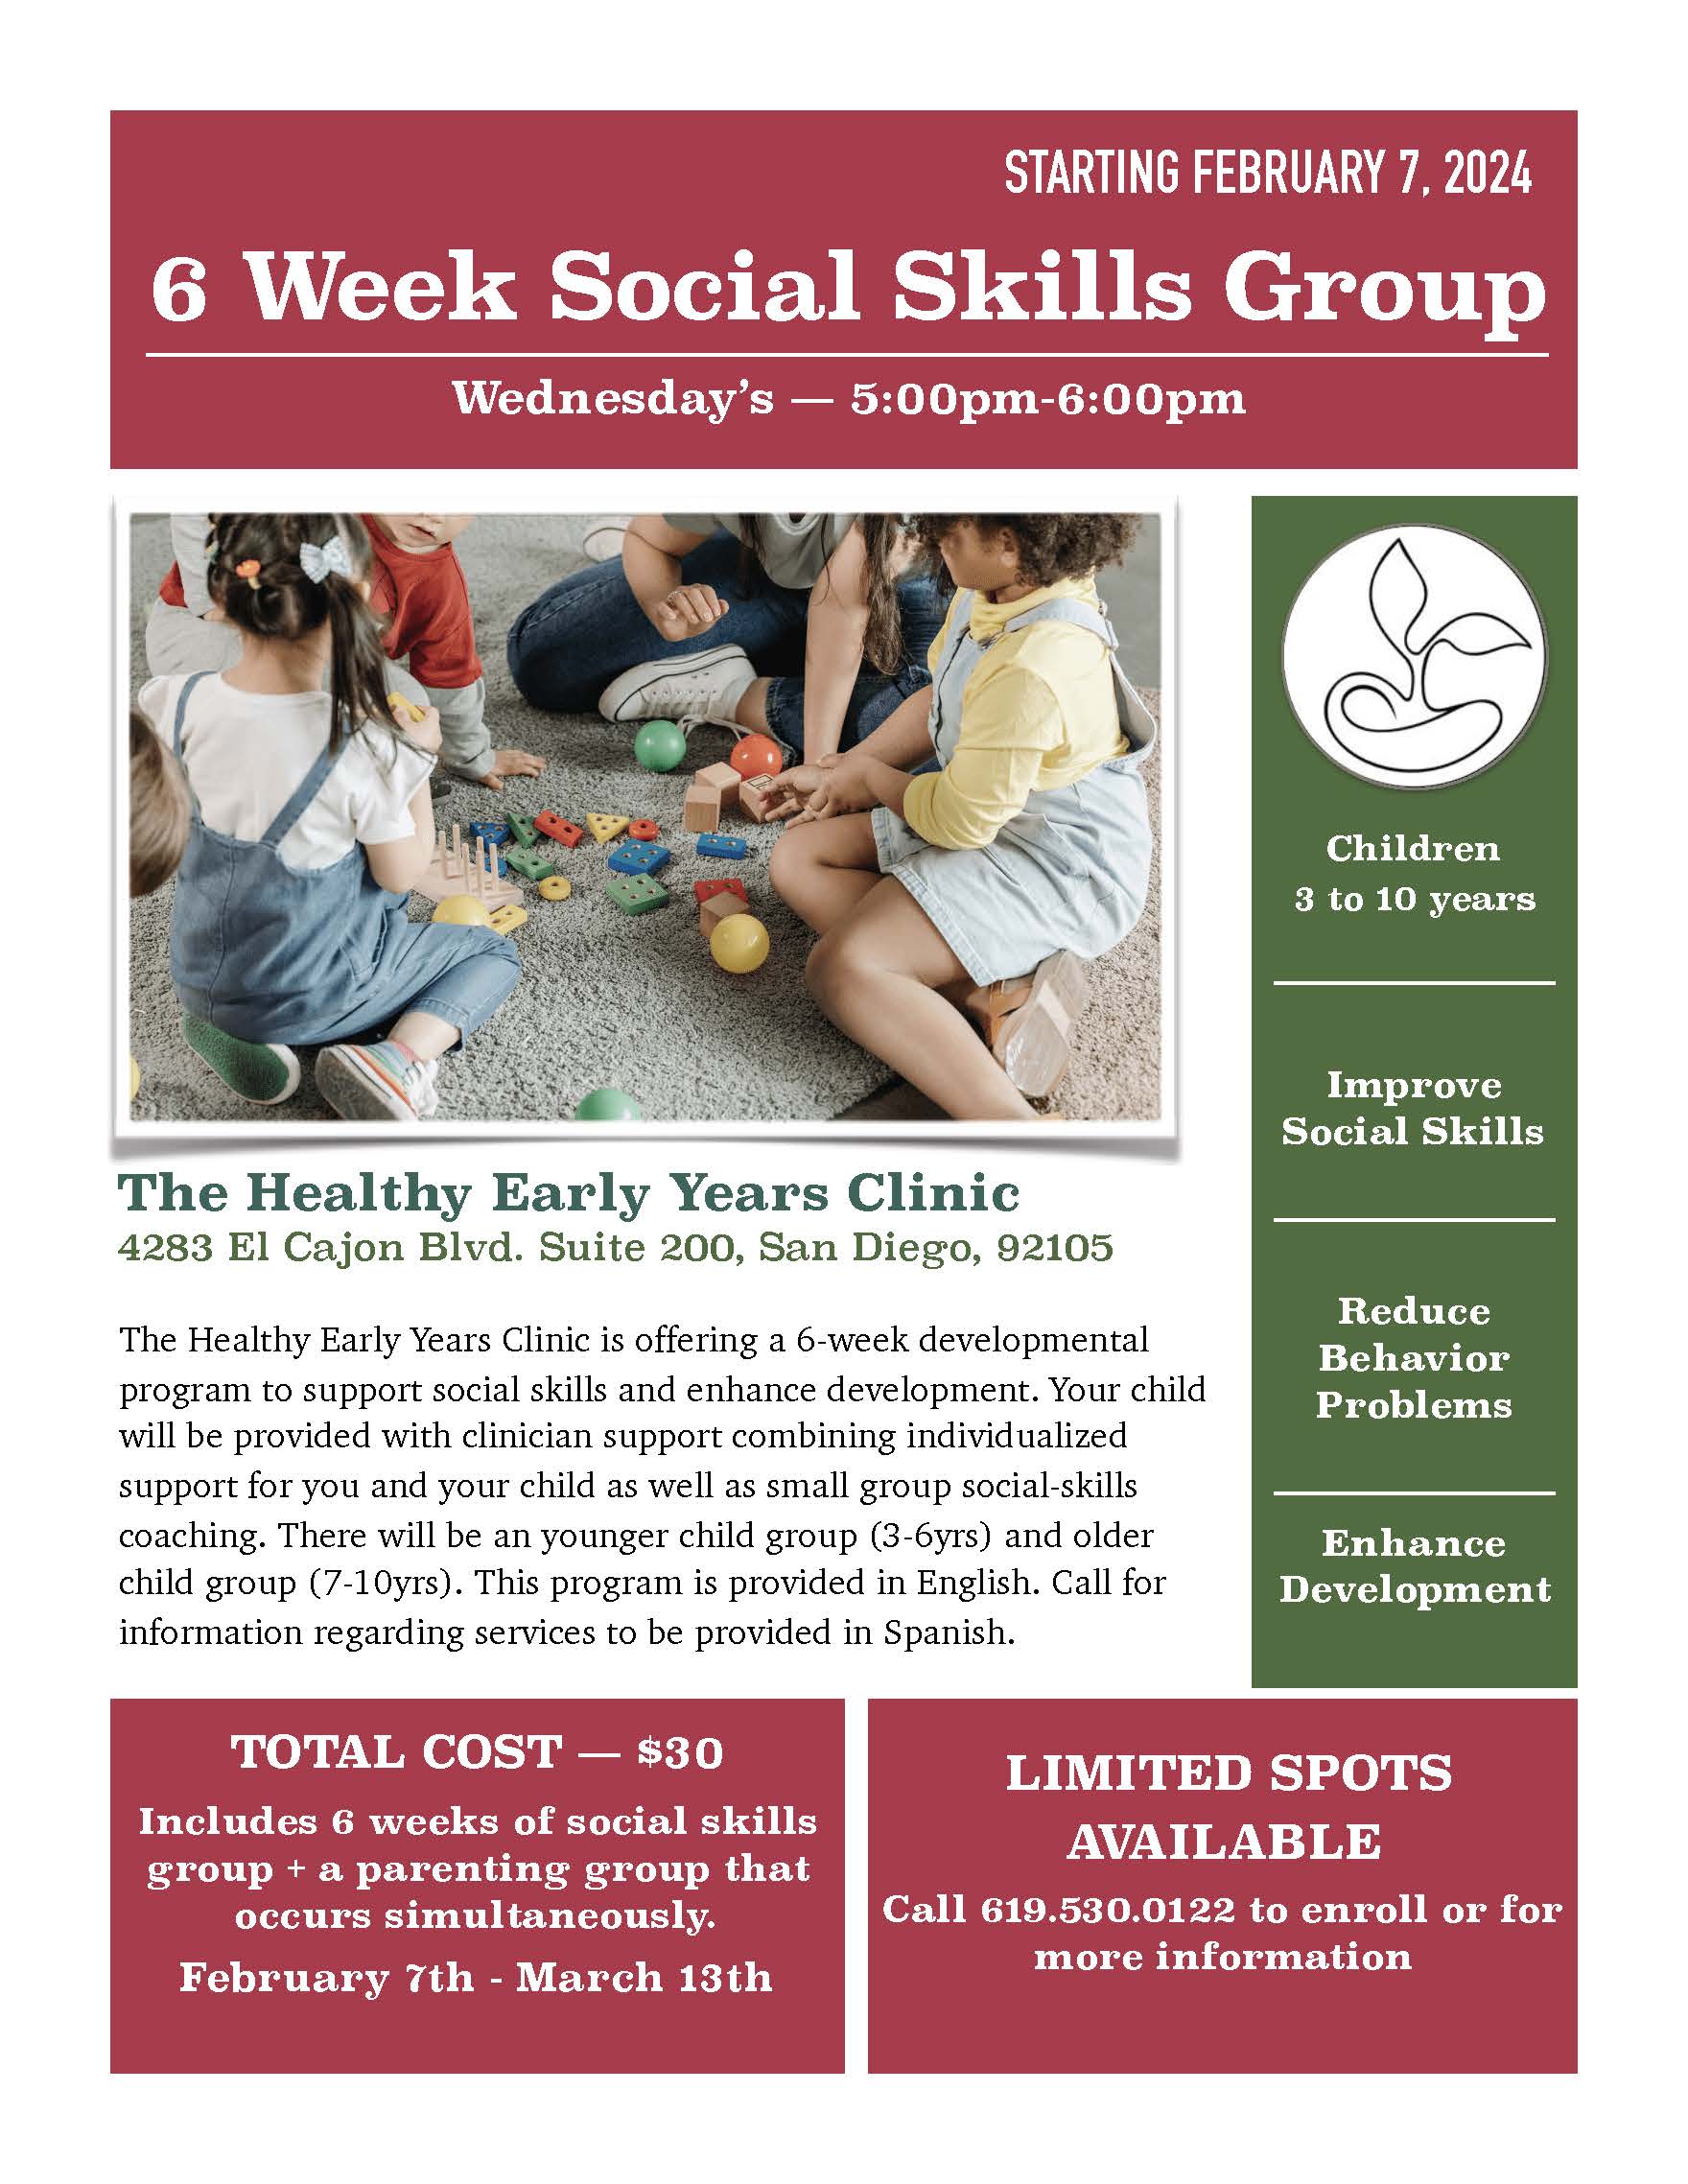 Social skills flyer social skills group for children 3-8 years old